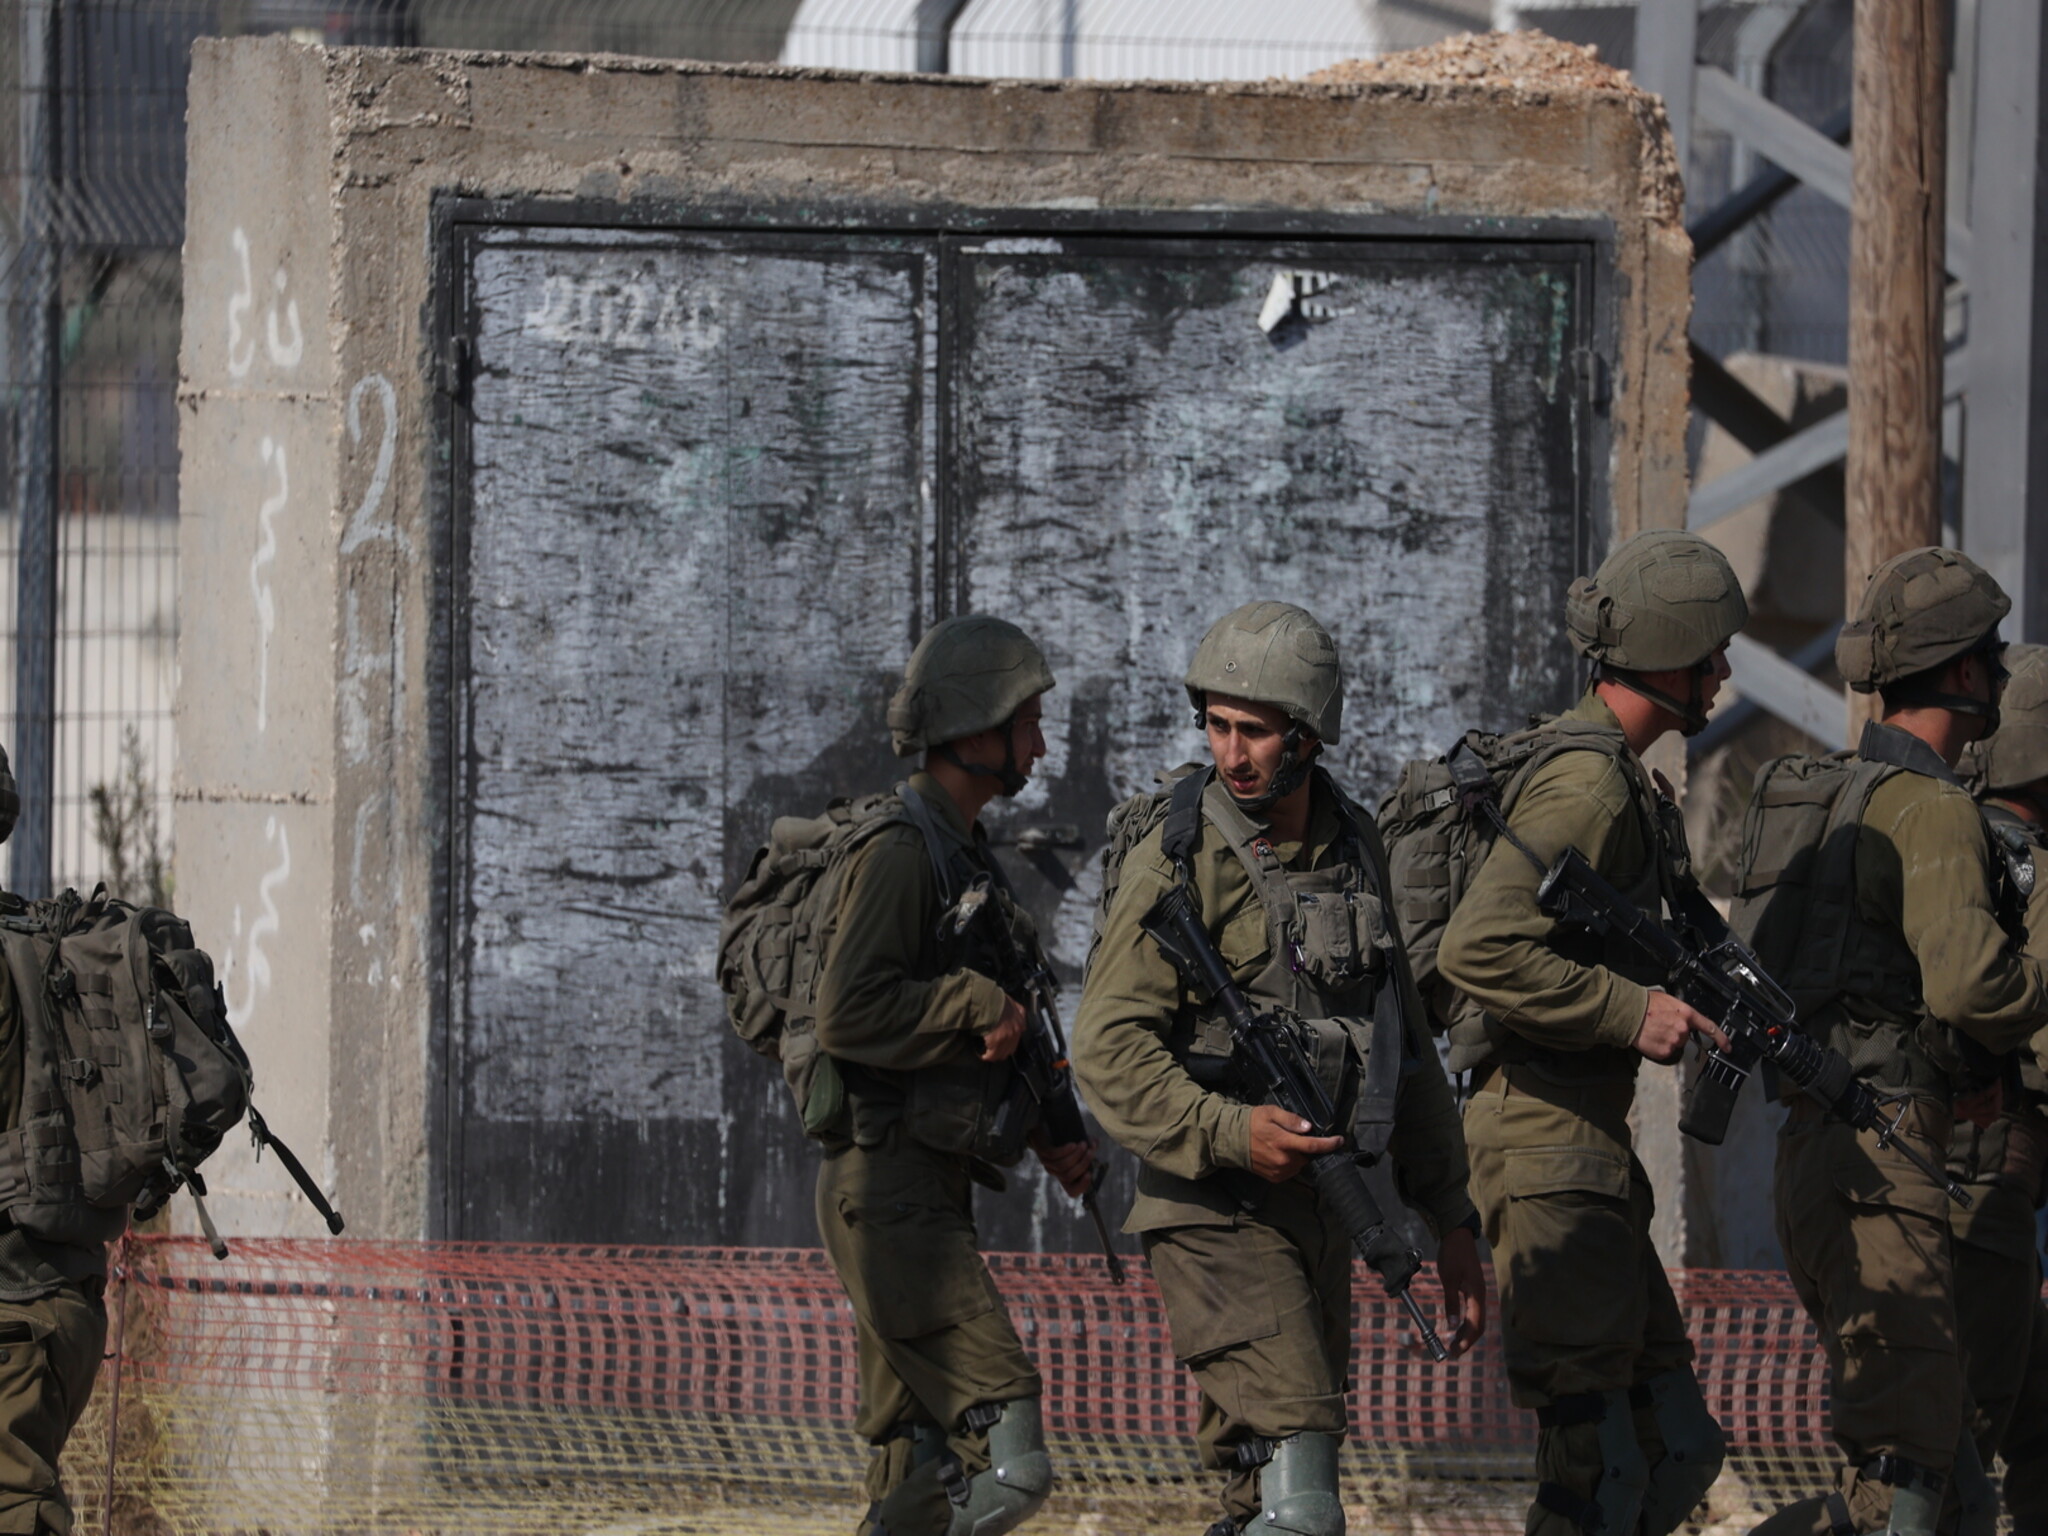 إسرائيل تشعر بالقلق من تحول الحرب الحالية مع حماس إلى صراع إقليمي أكبر